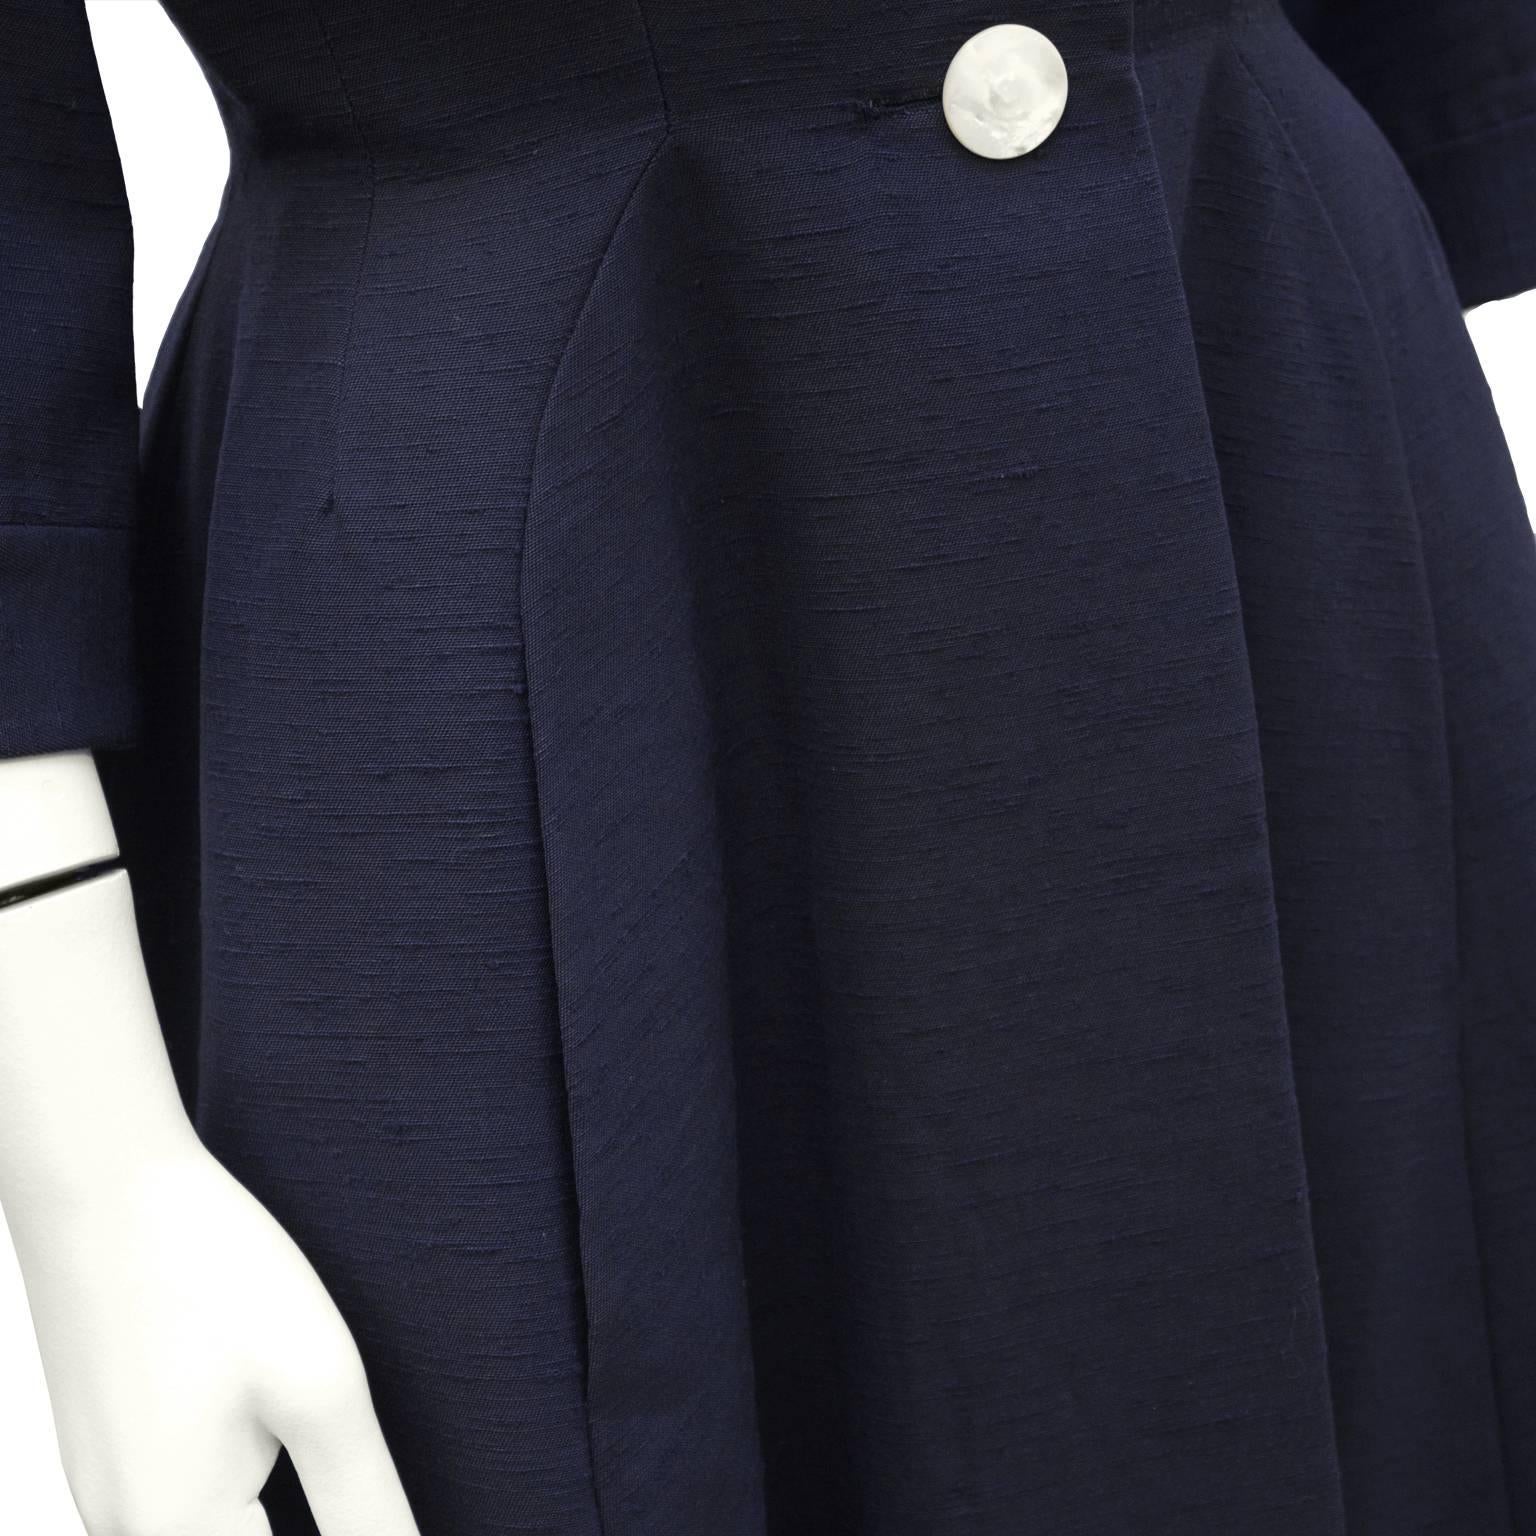 Women's 1950's Staebe - Seger New Look Coat